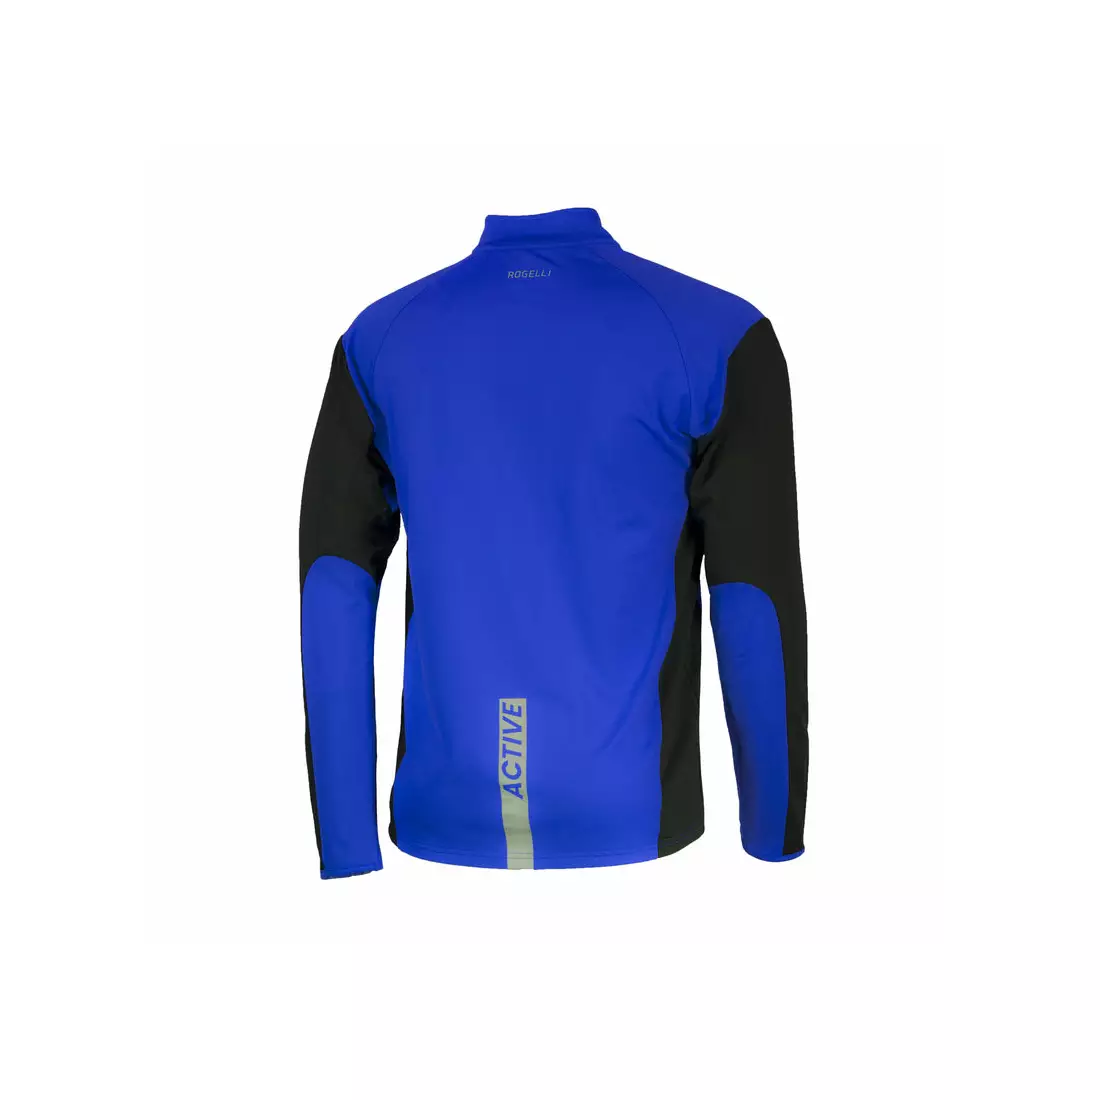 ROGELLI RUN - DILLON - lekko ocieplana męska bluza biegowa, kolor: Niebieski